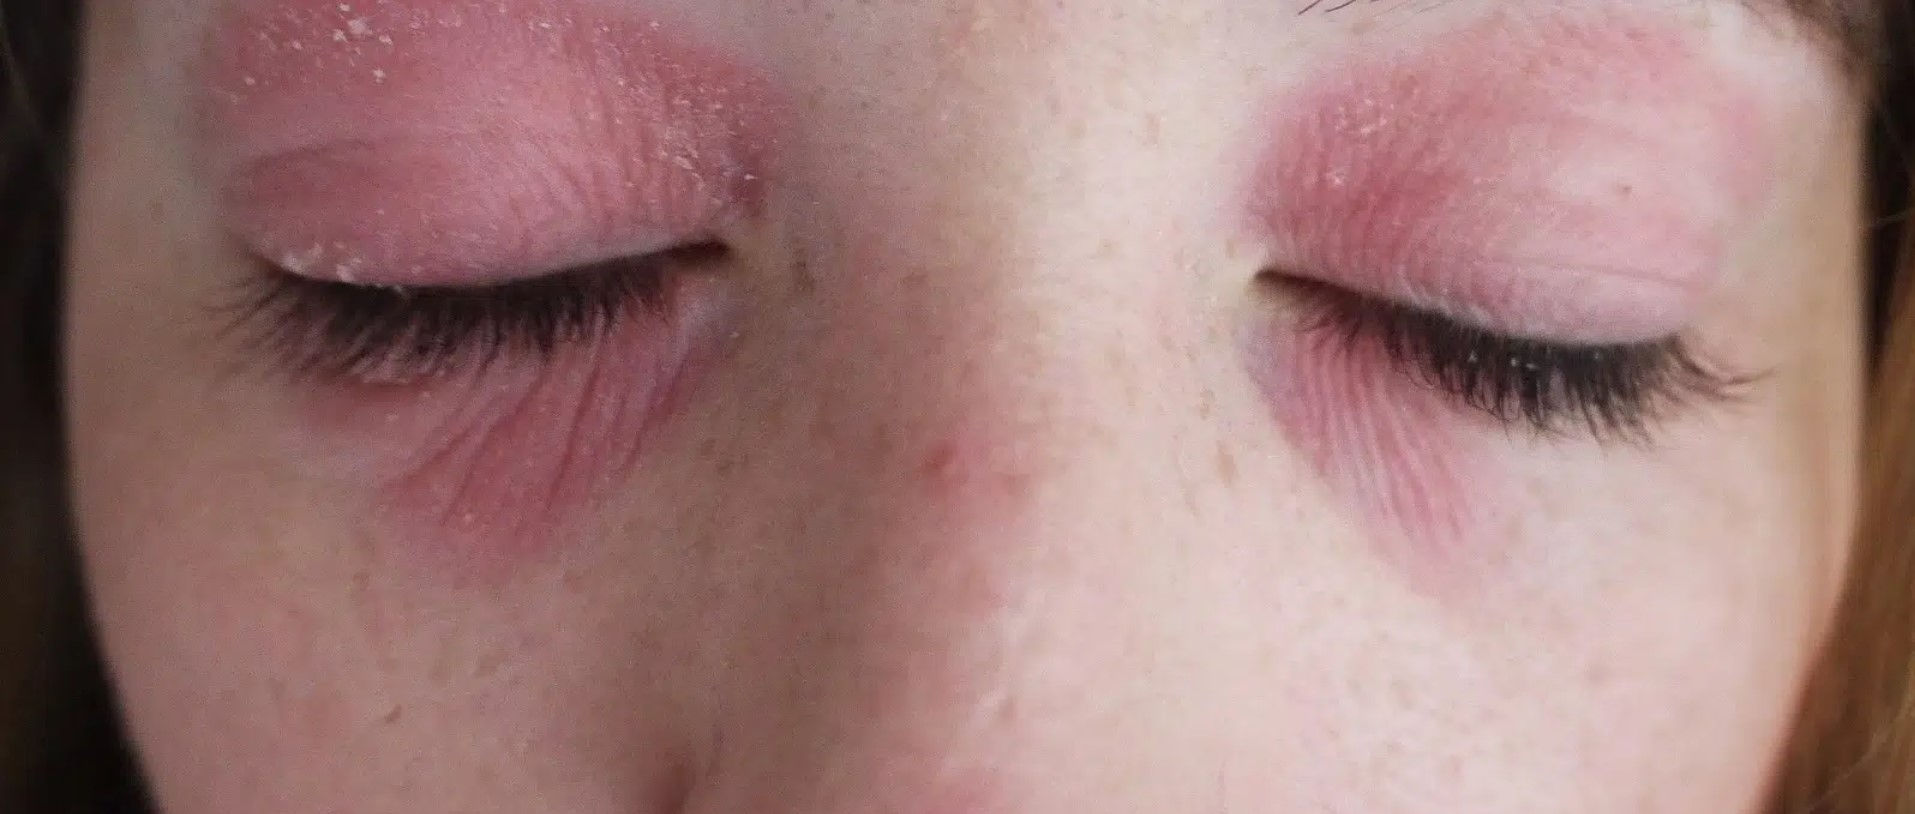 Eczema Eyelids